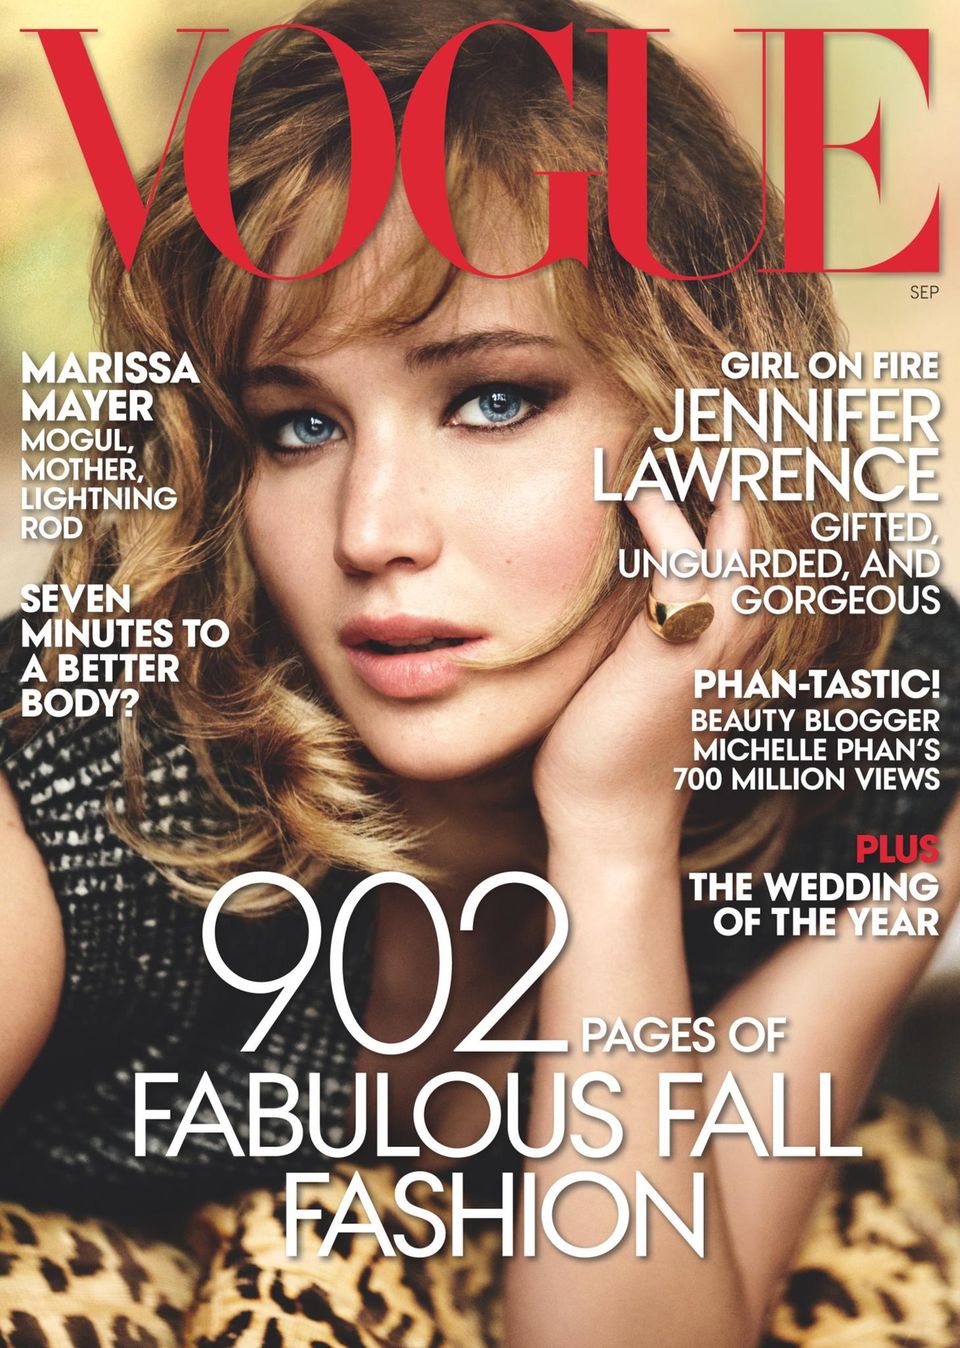 Schön & schlau  Neben Beautytipps, Fashiontrends und Titelgirl Jennifer Lawrence: Die Marissa-Mayer-Story soll auf dem Titel der renommierten US-"Vogue" als zusätzliches Kaufargument dienen.